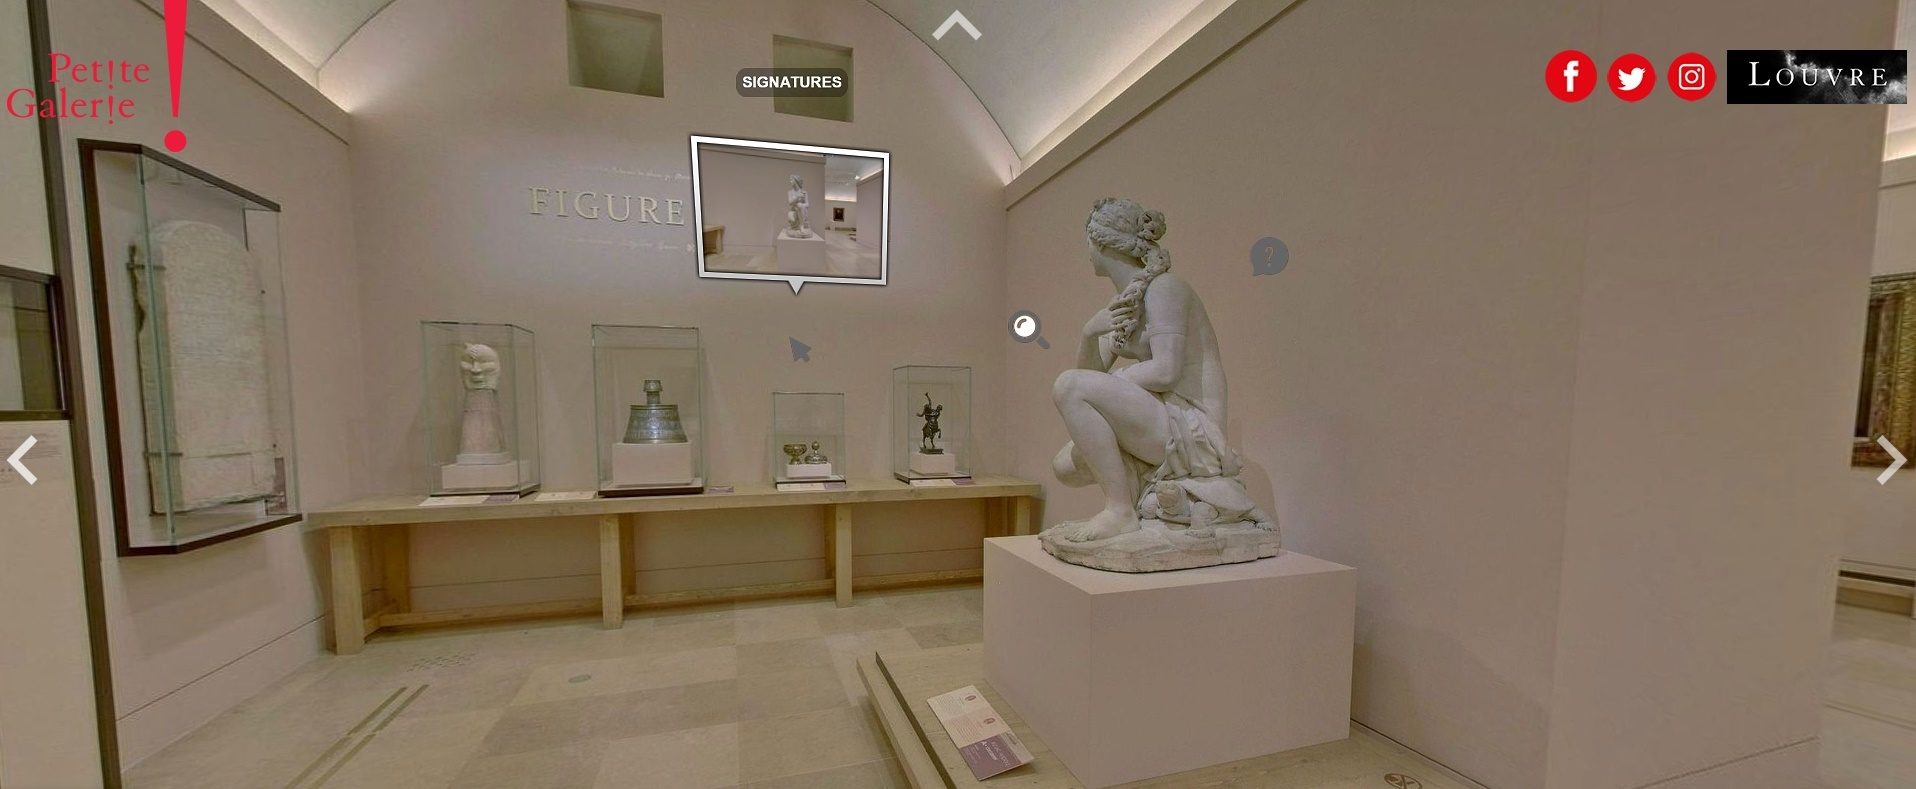 พิพิธภัณฑ์ลูฟวร์ กรุงปารีส ประเทศฝรั่งเศส